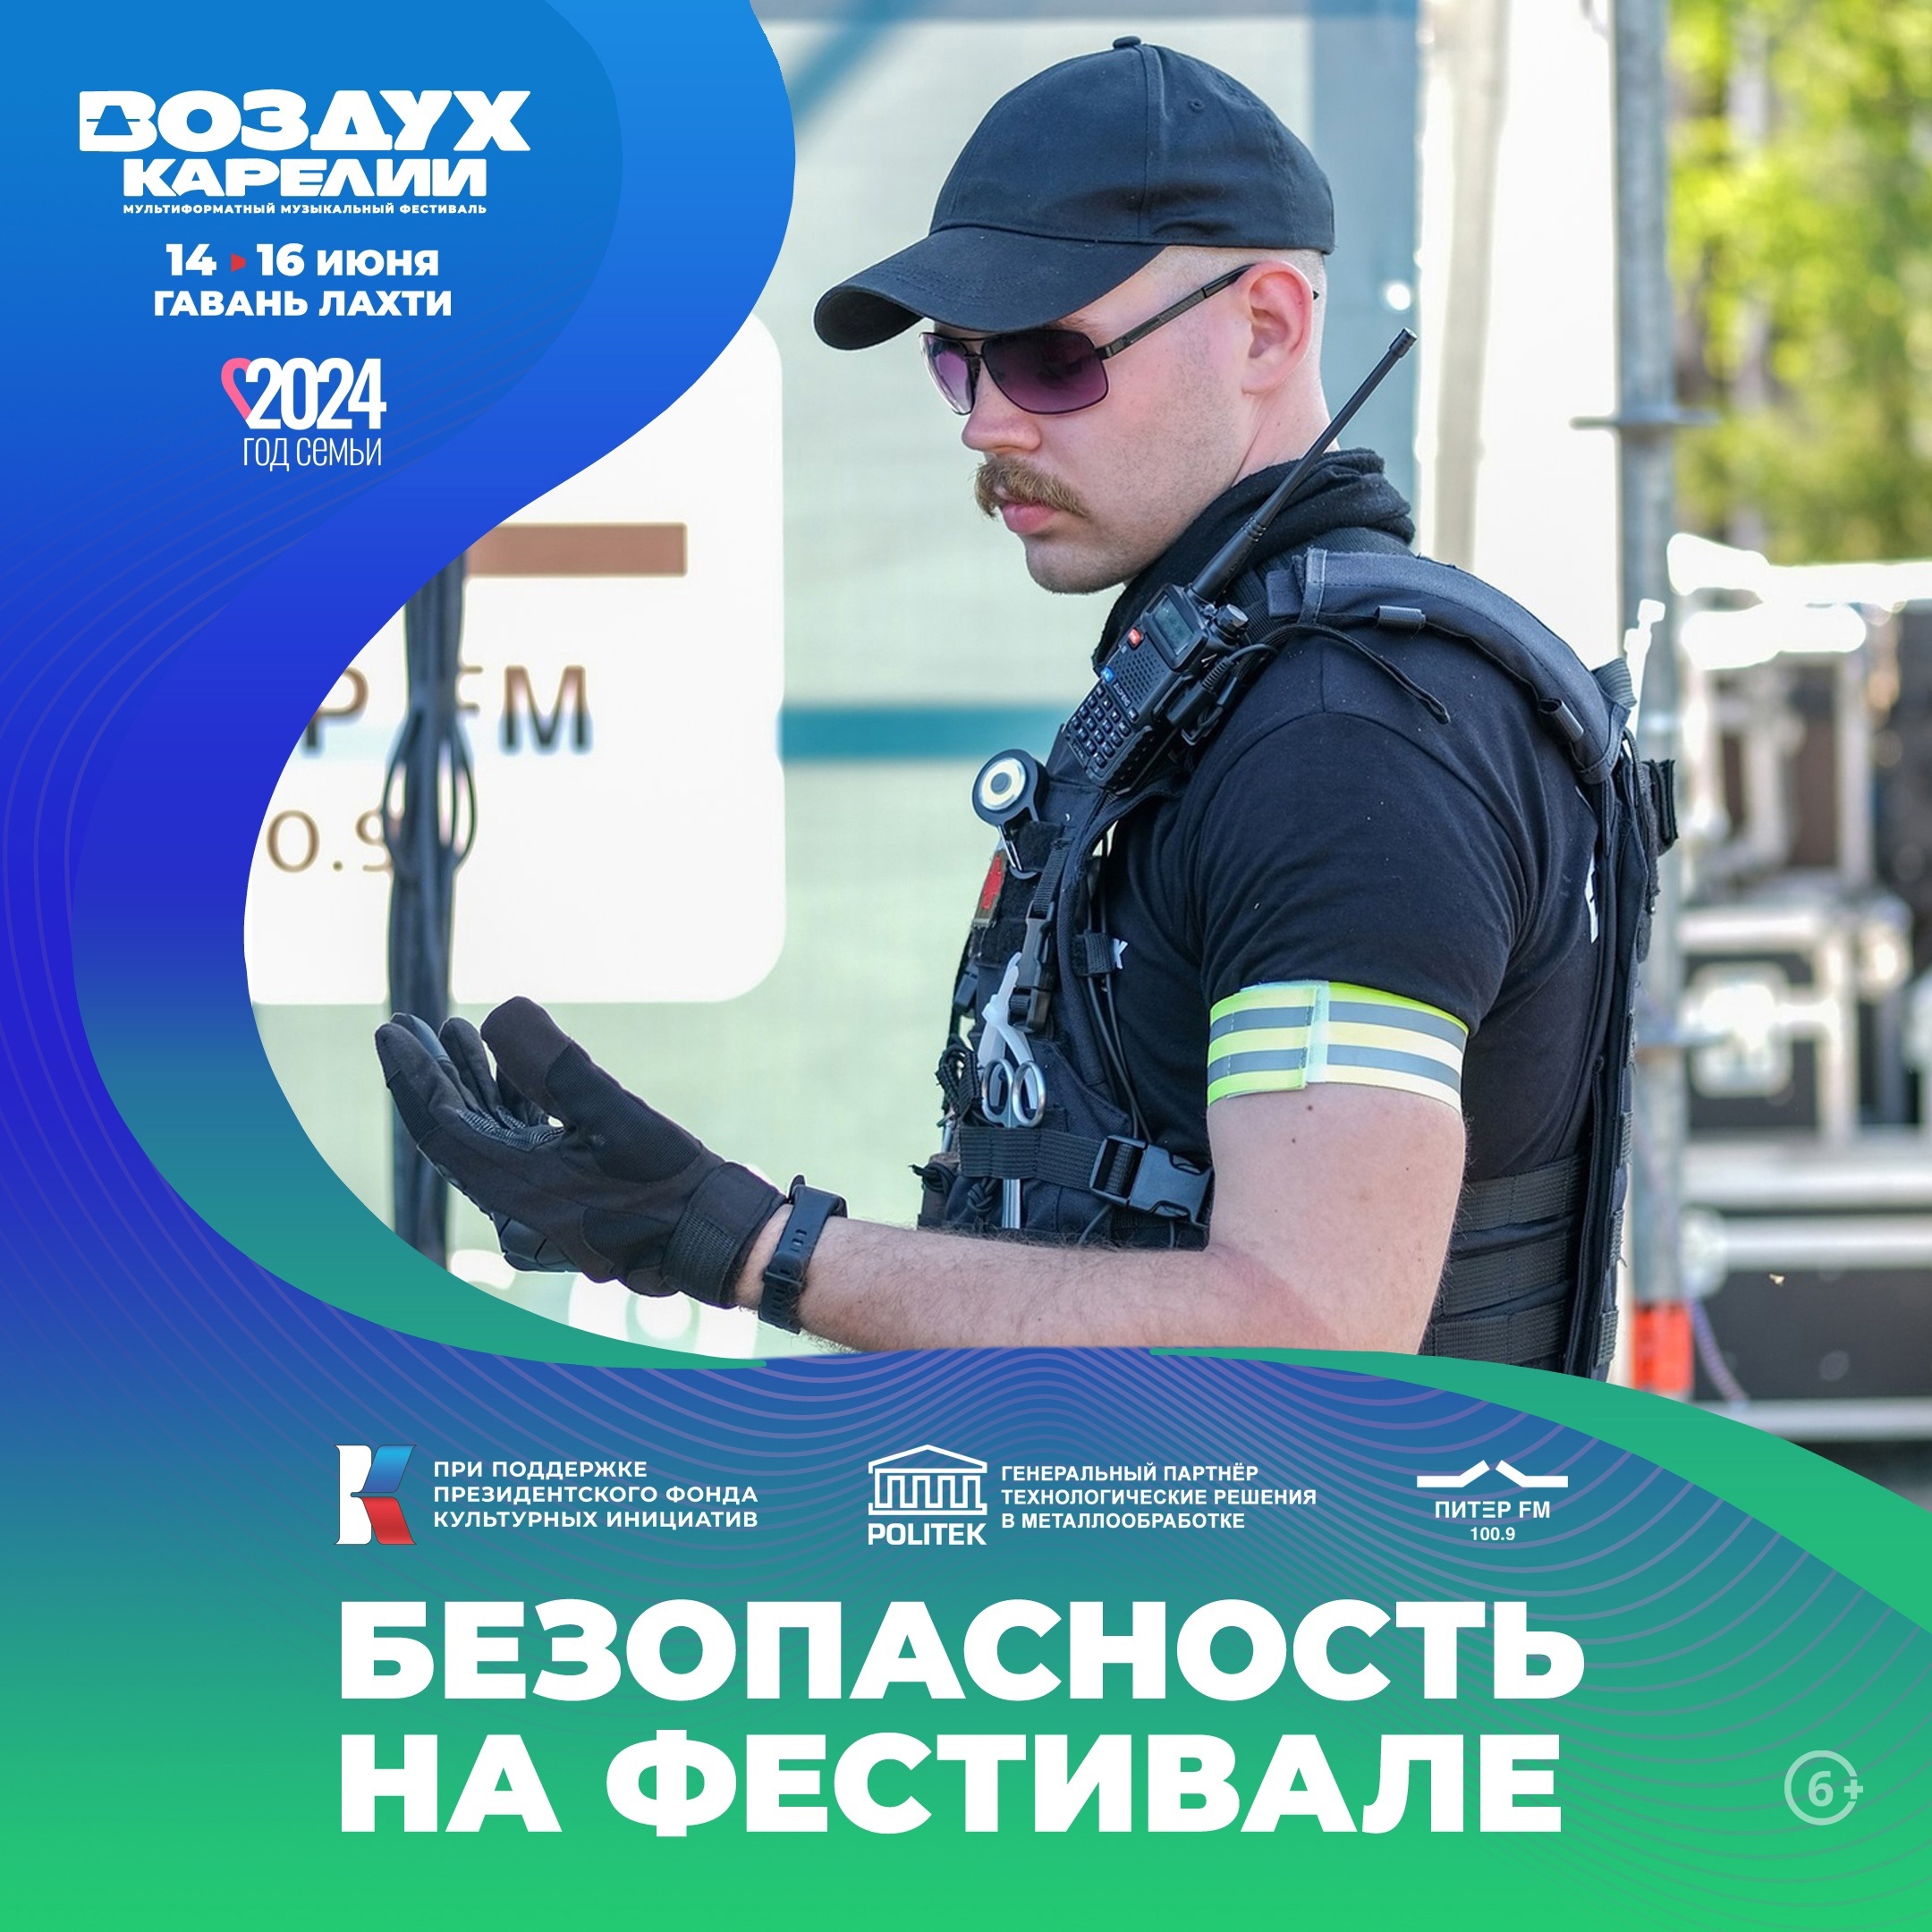 Организаторы фестиваля «Воздух Карелии» рассказали, как обеспечат безопасность зрителей и артистов